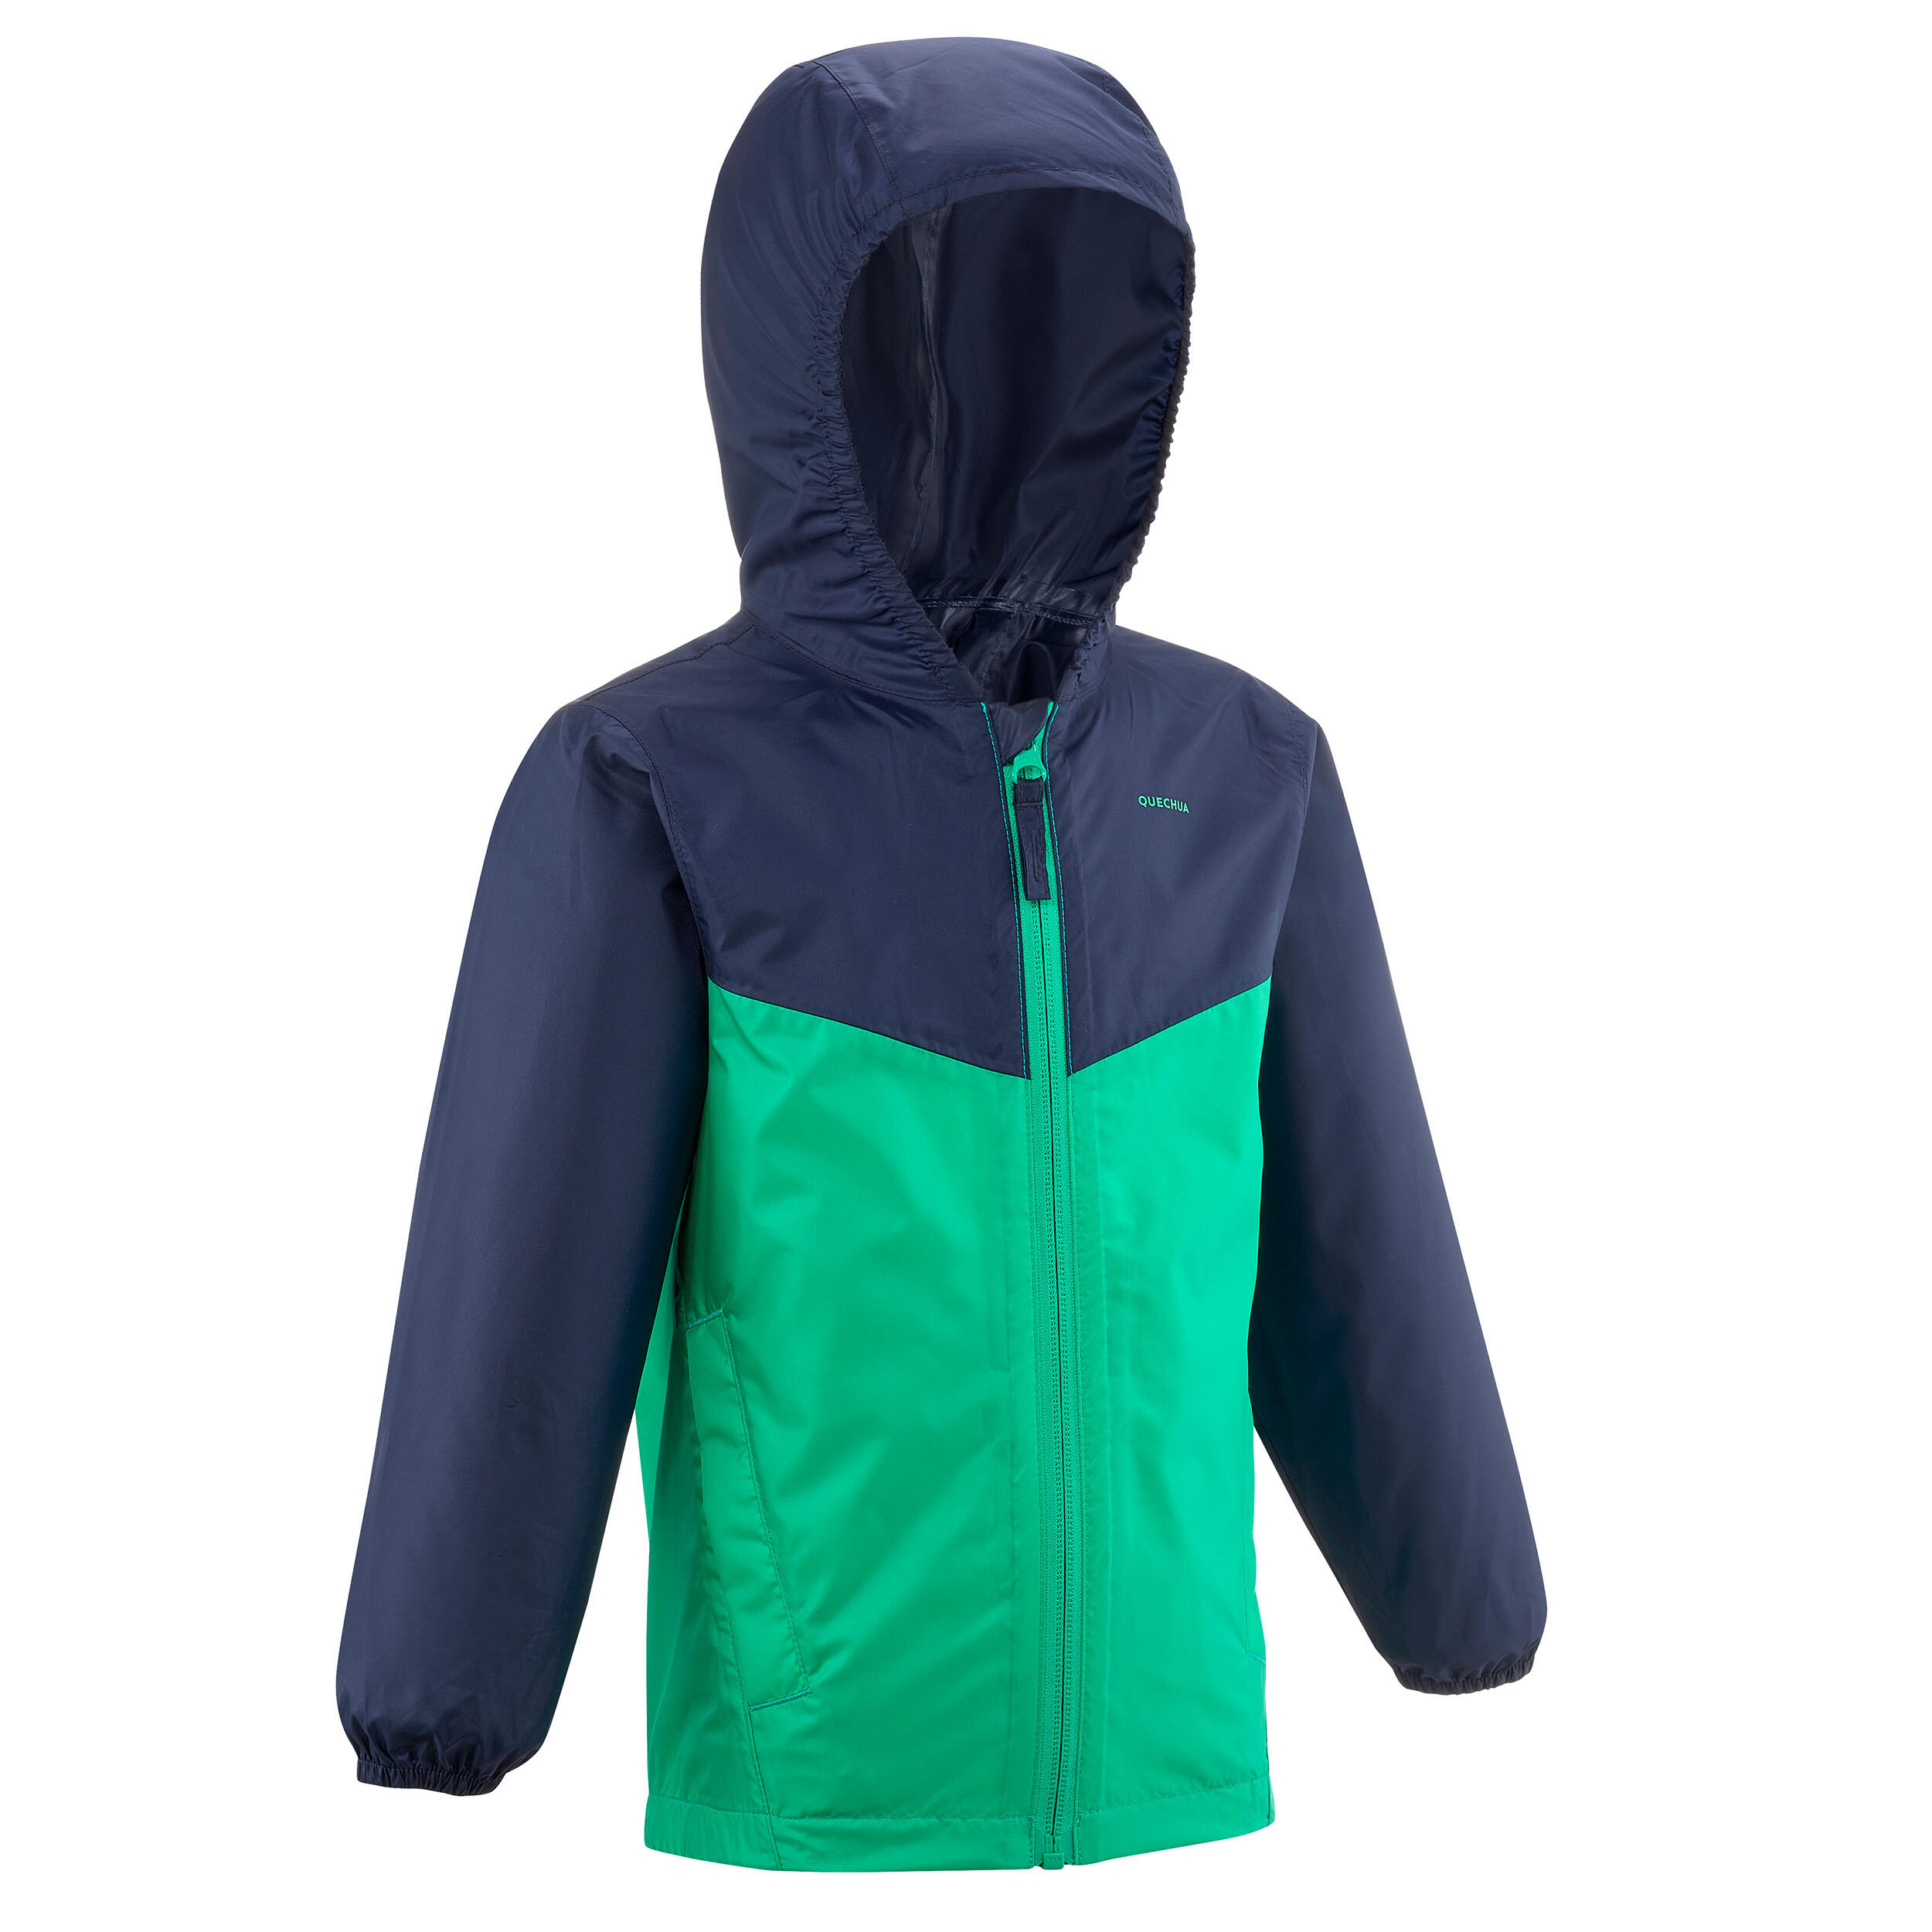 Kids’ Waterproof Hiking Jacket - MH100 Zip - Aged 2-6 1/8